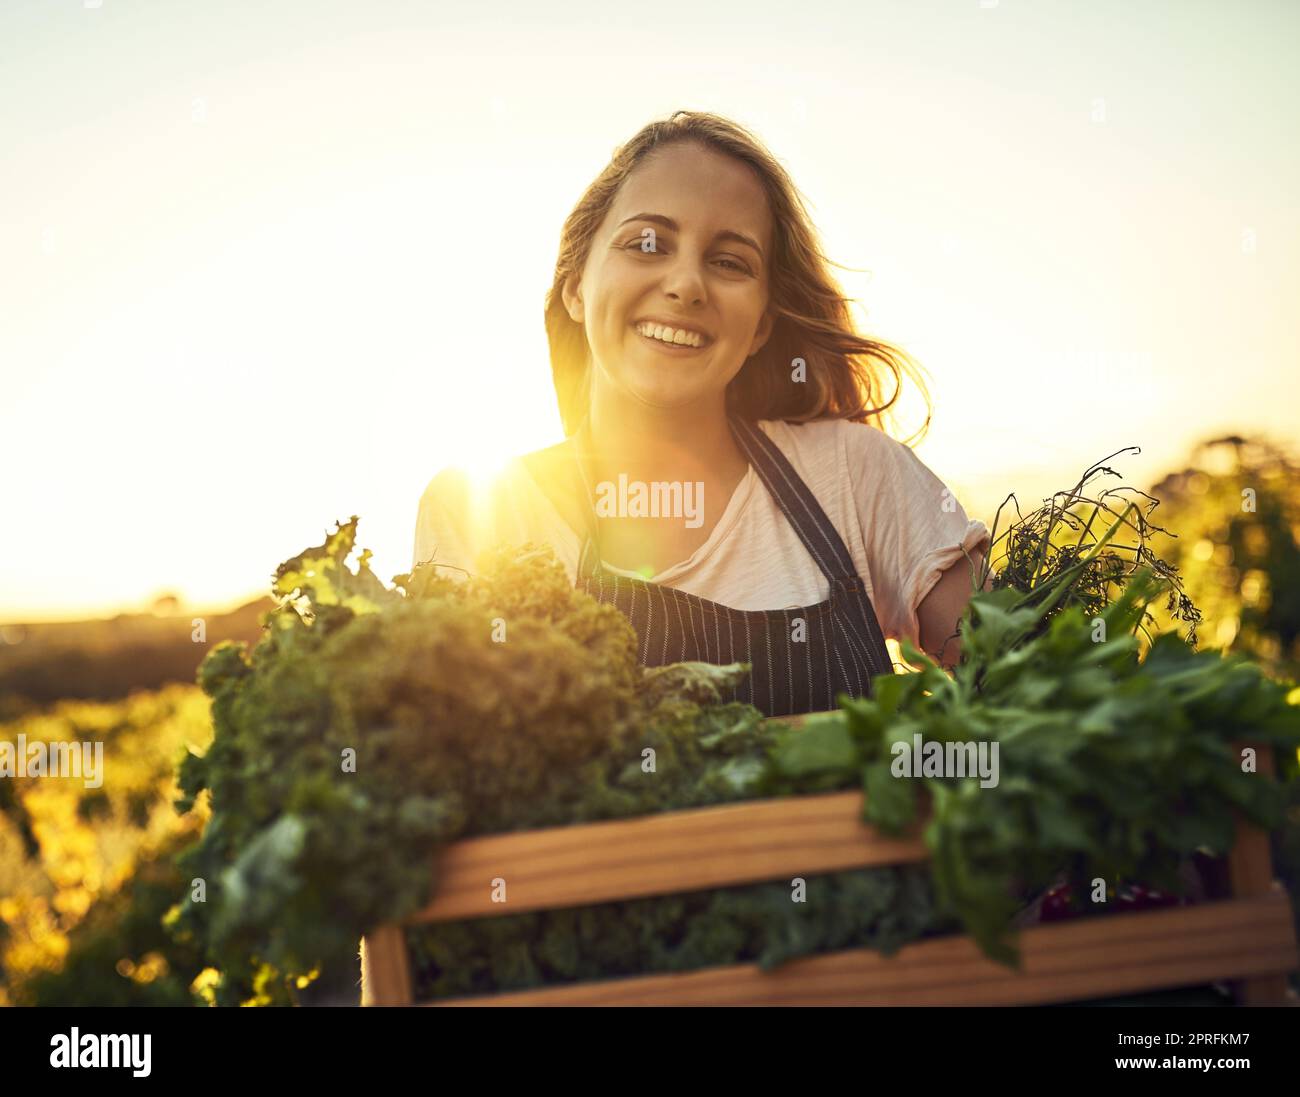 Nada más que el orgánico en mi granja. Una mujer joven que sostiene una caja llena de productos recién recogidos en una granja. Foto de stock